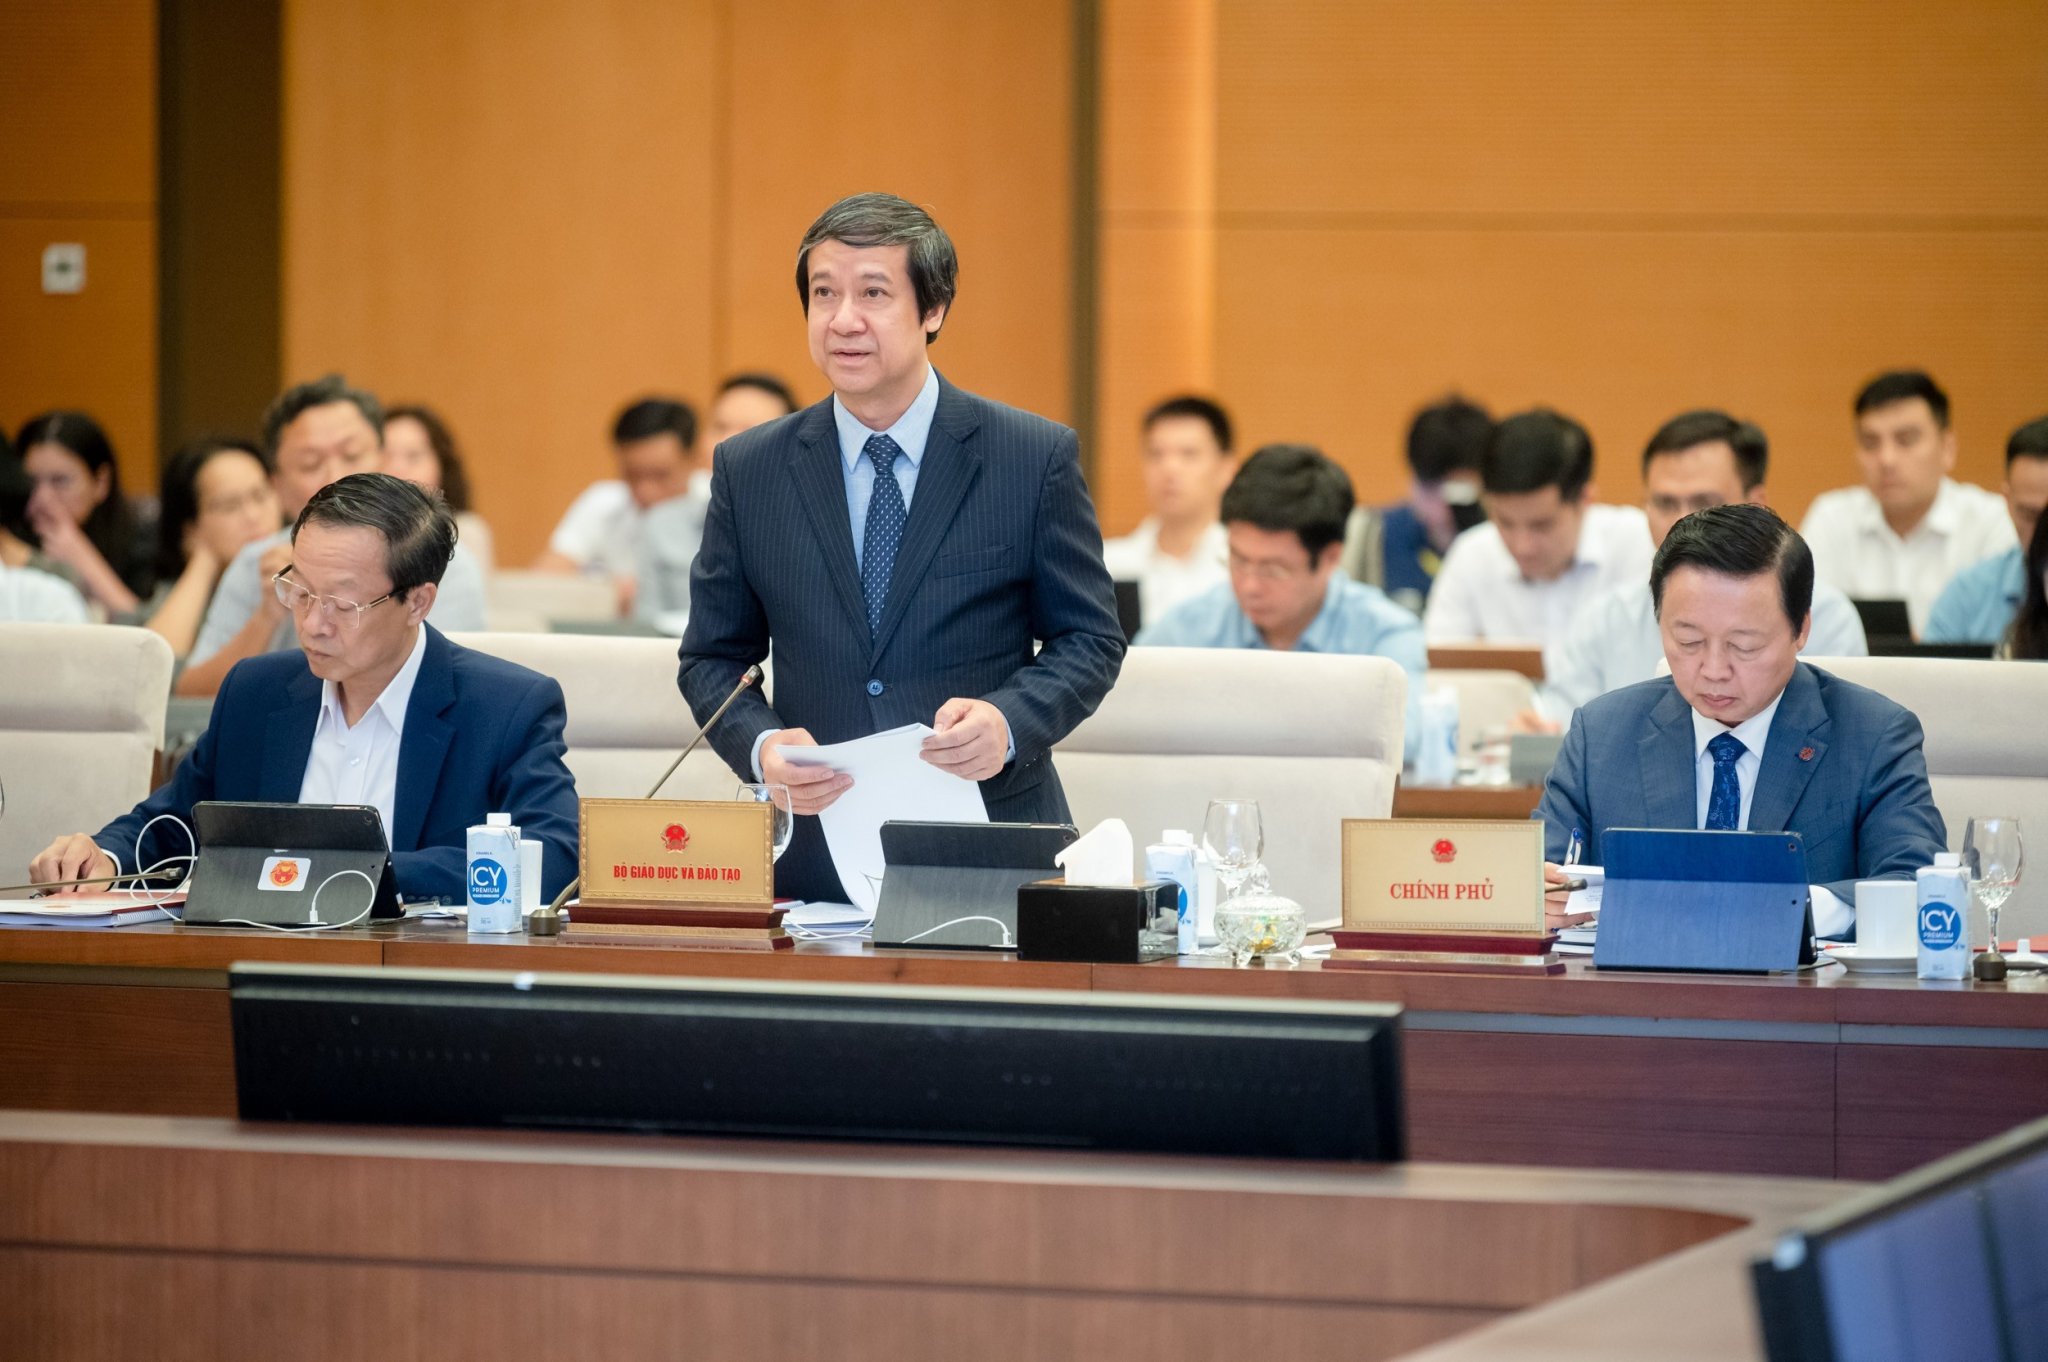 Giáo dục - Bộ trưởng Nguyễn Kim Sơn: Bộ GD&ĐT phải chuẩn bị thêm một bộ SGK, có cần thiết?